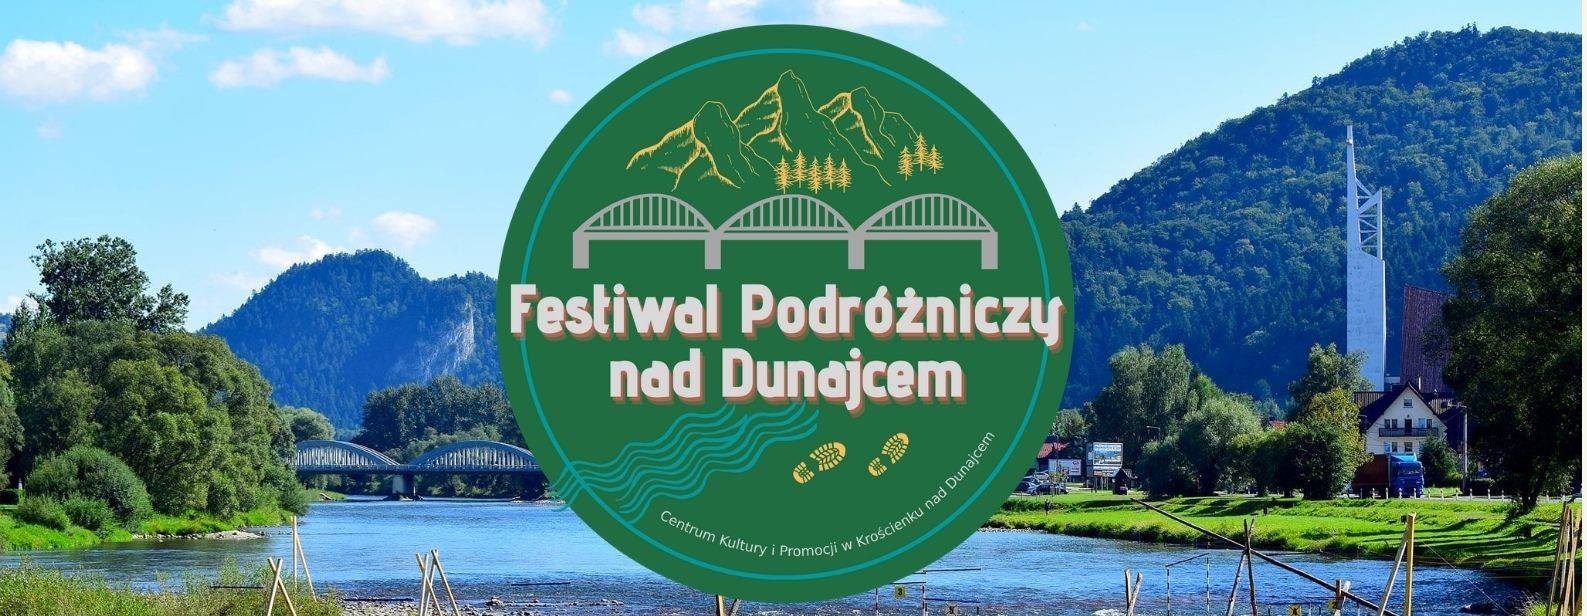 Festiwal podróżniczy nad Dunajcem